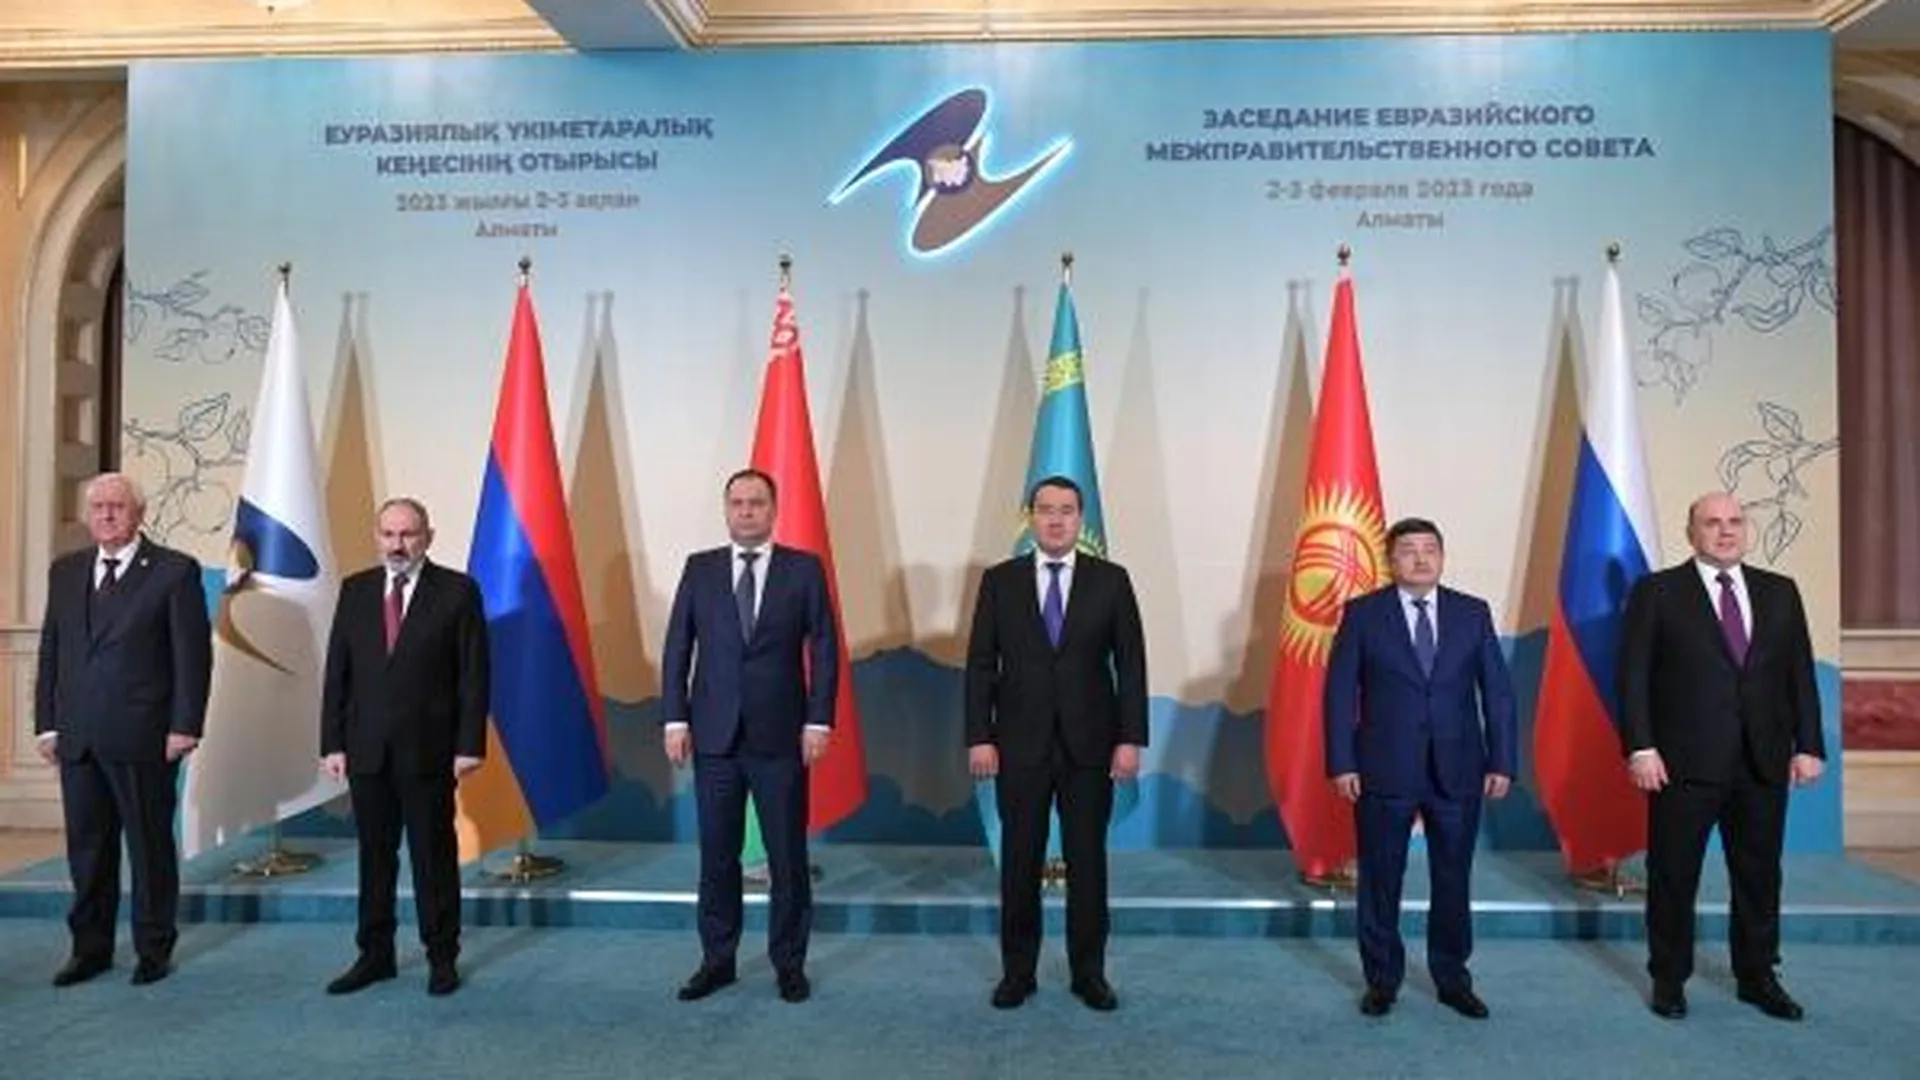 Михаил Мишустин на совместном фотографировании глав делегаций Евразийского межправительственного совета, февраль 2023 года